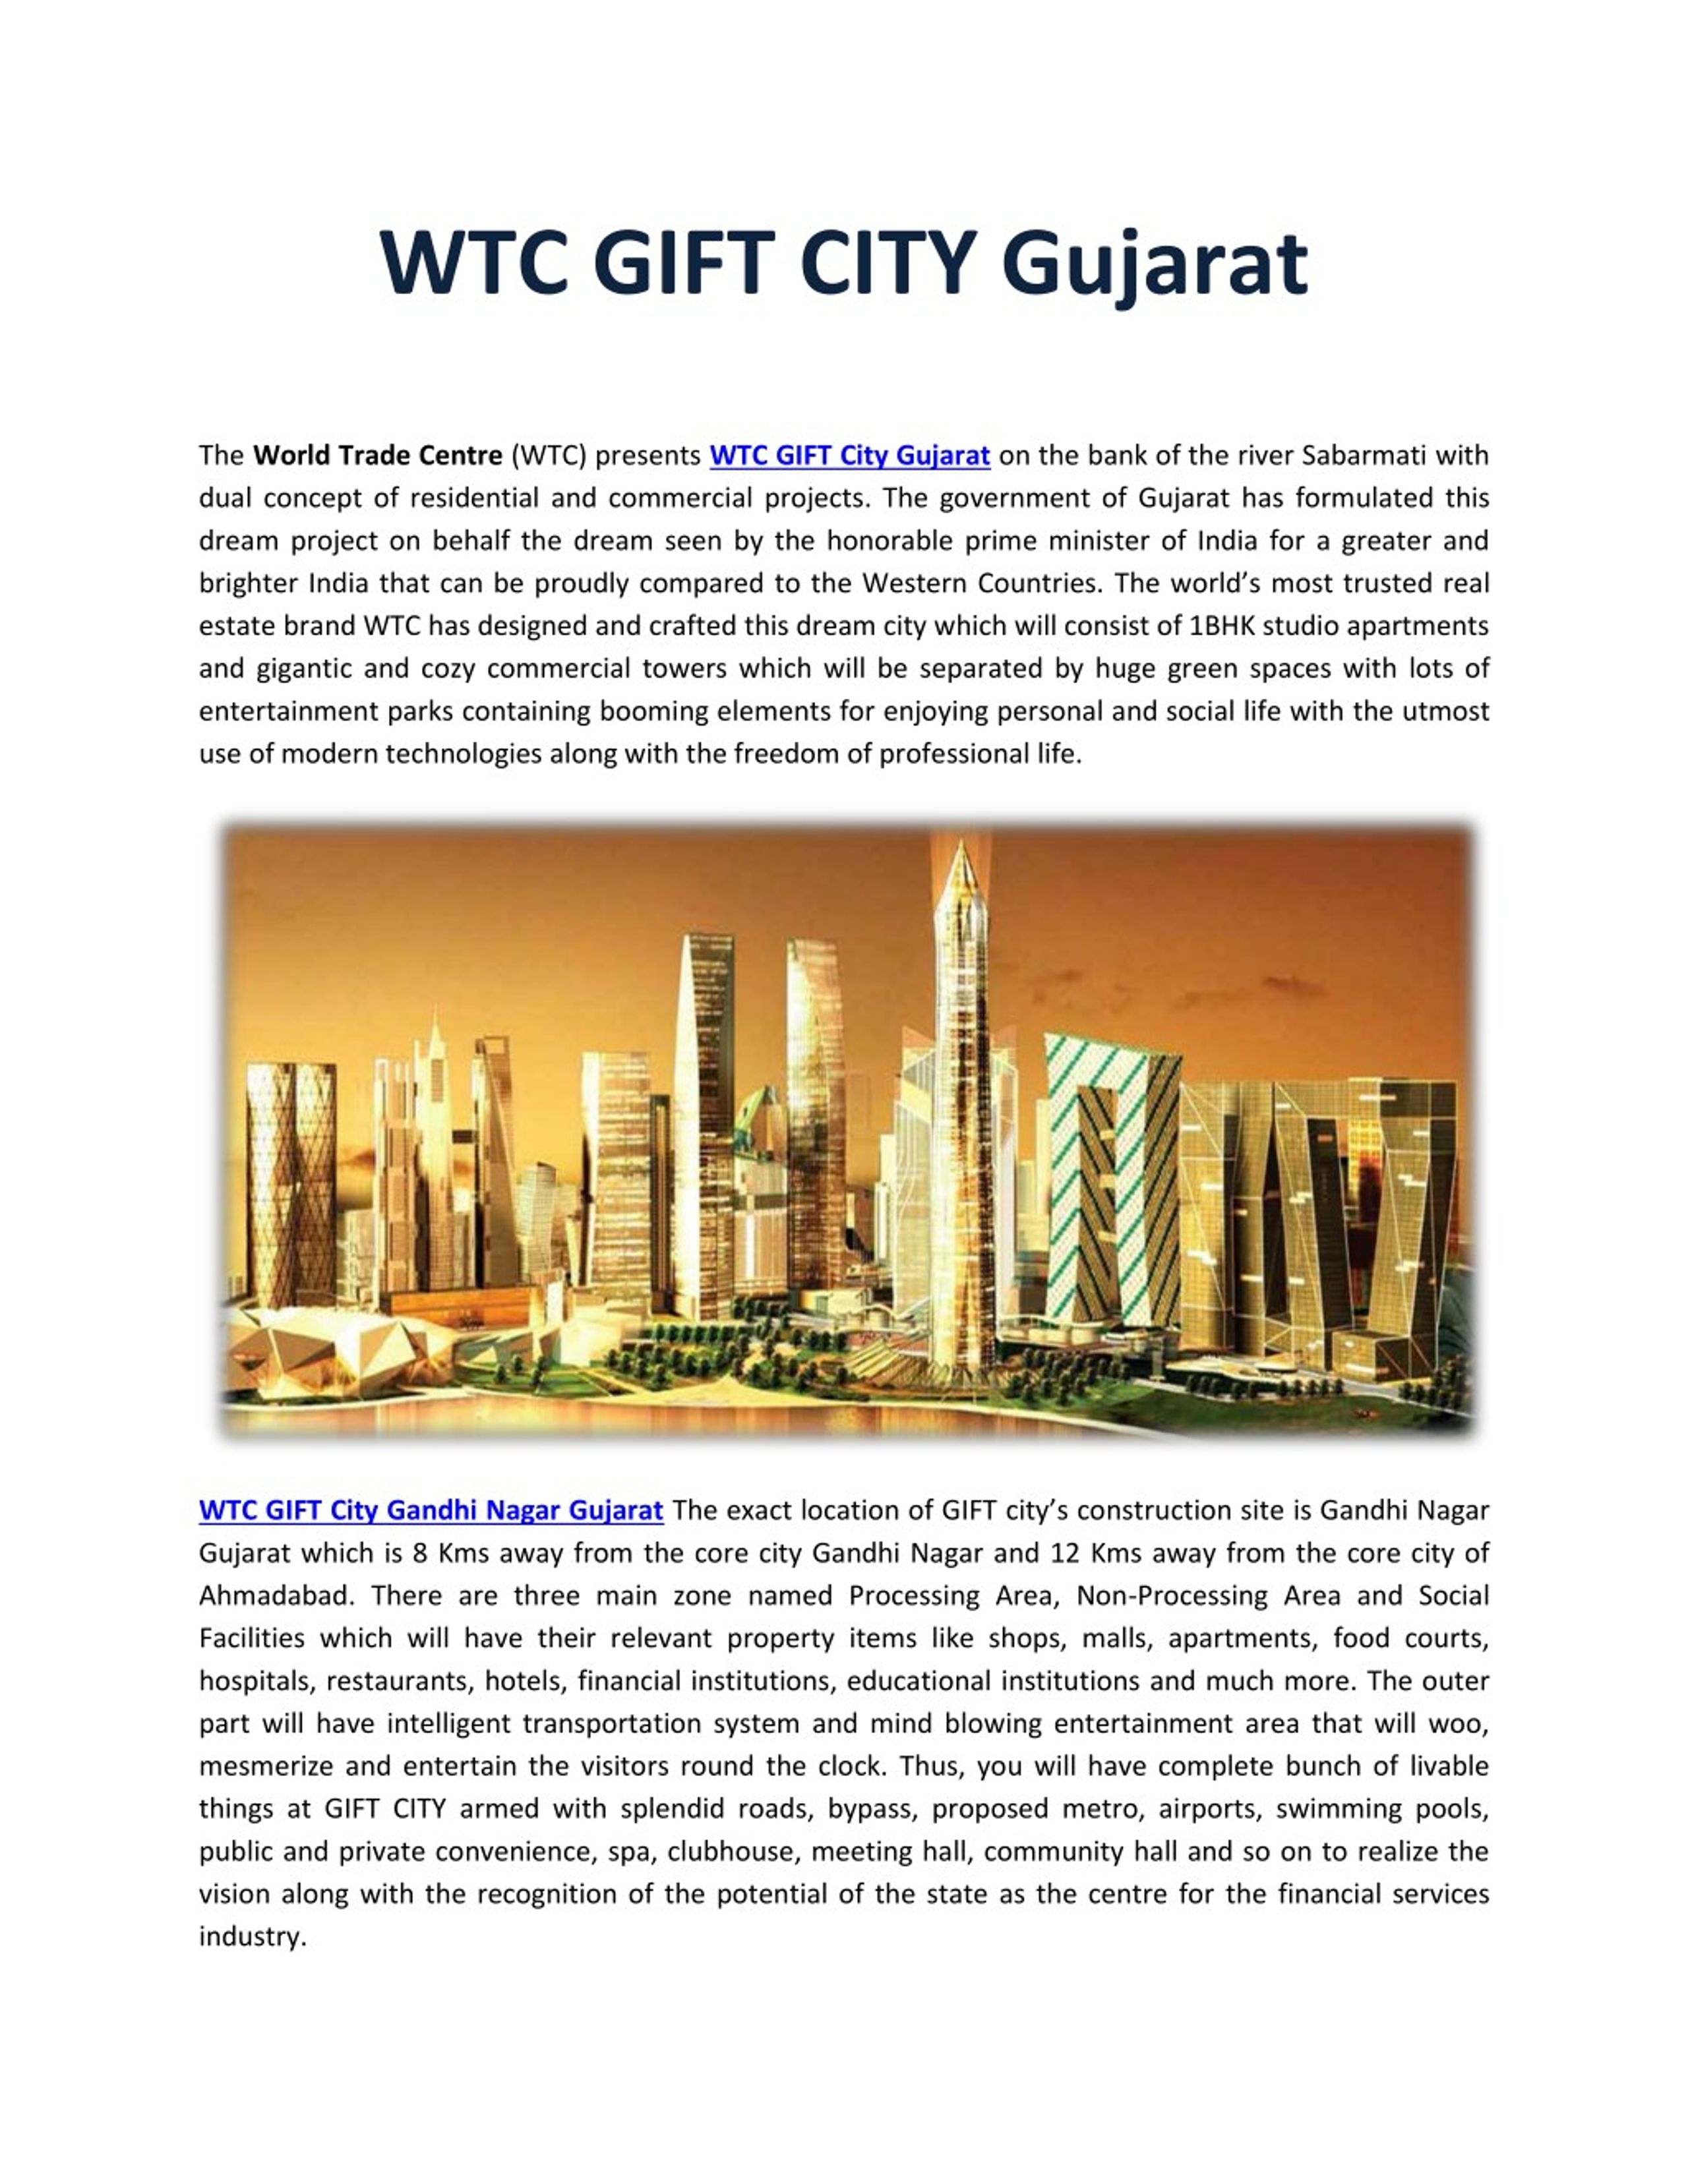 gift city presentation